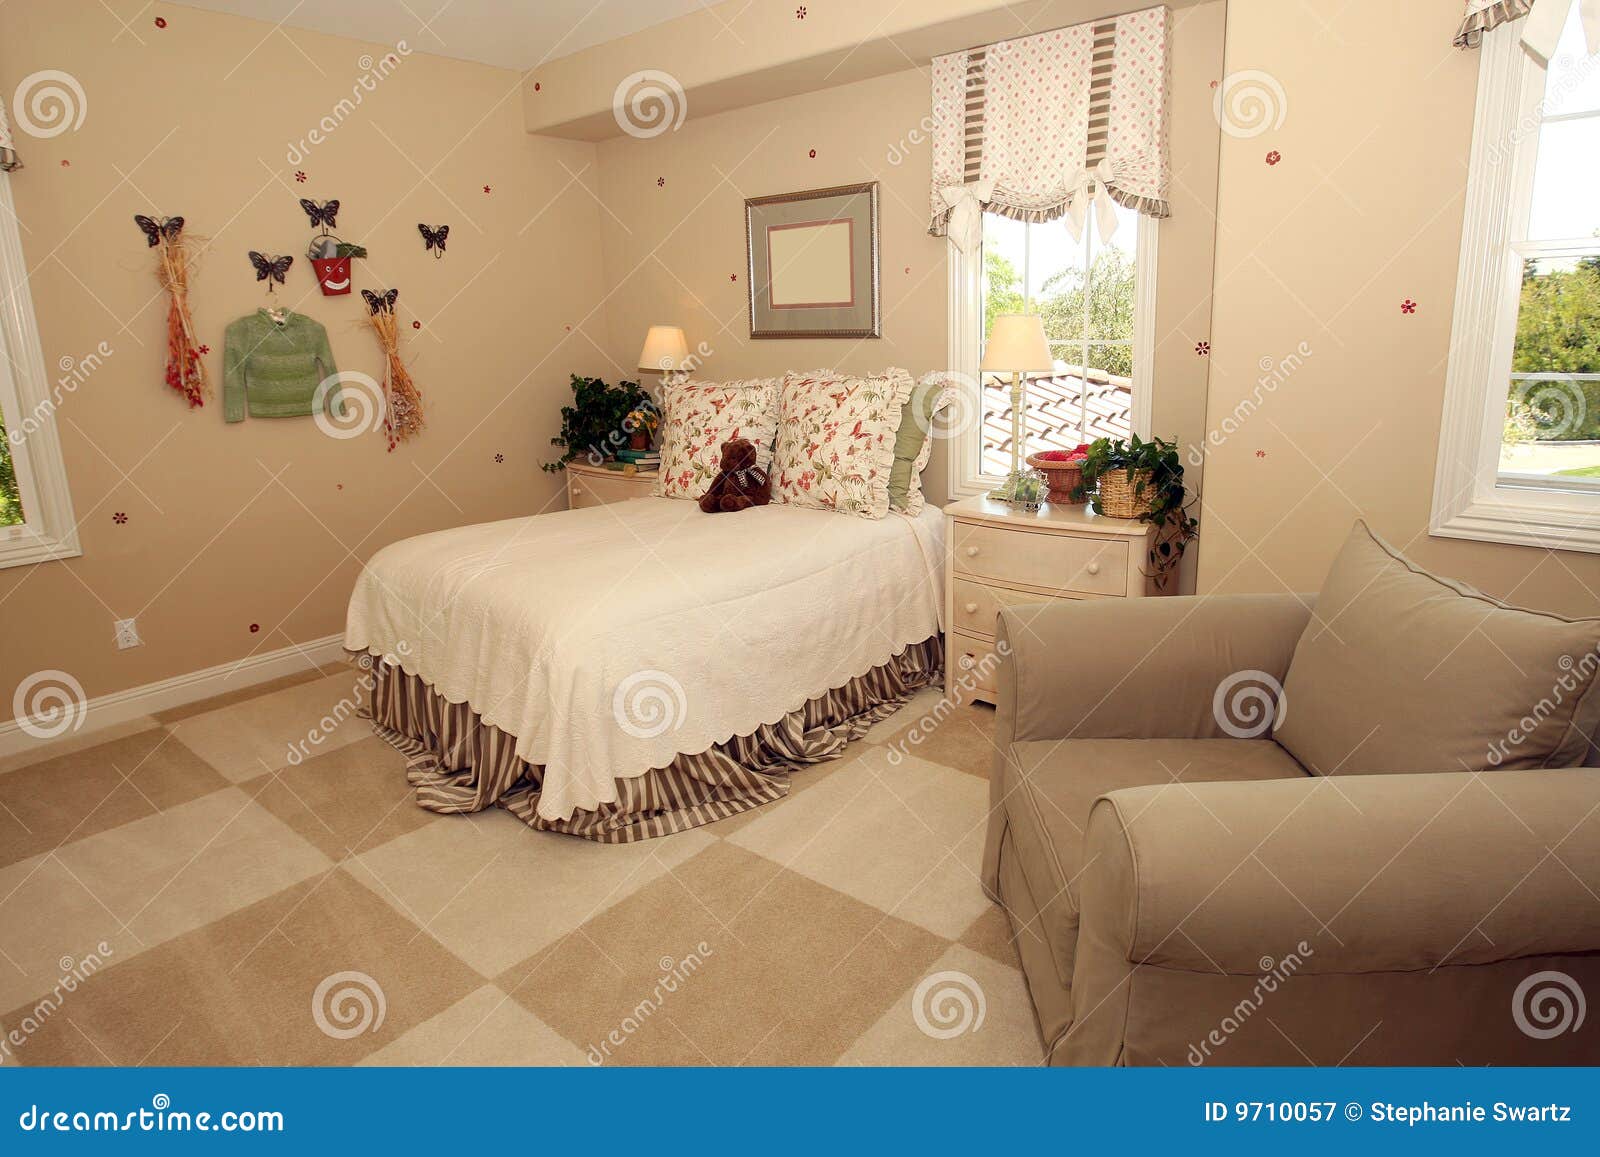 childs bedroom